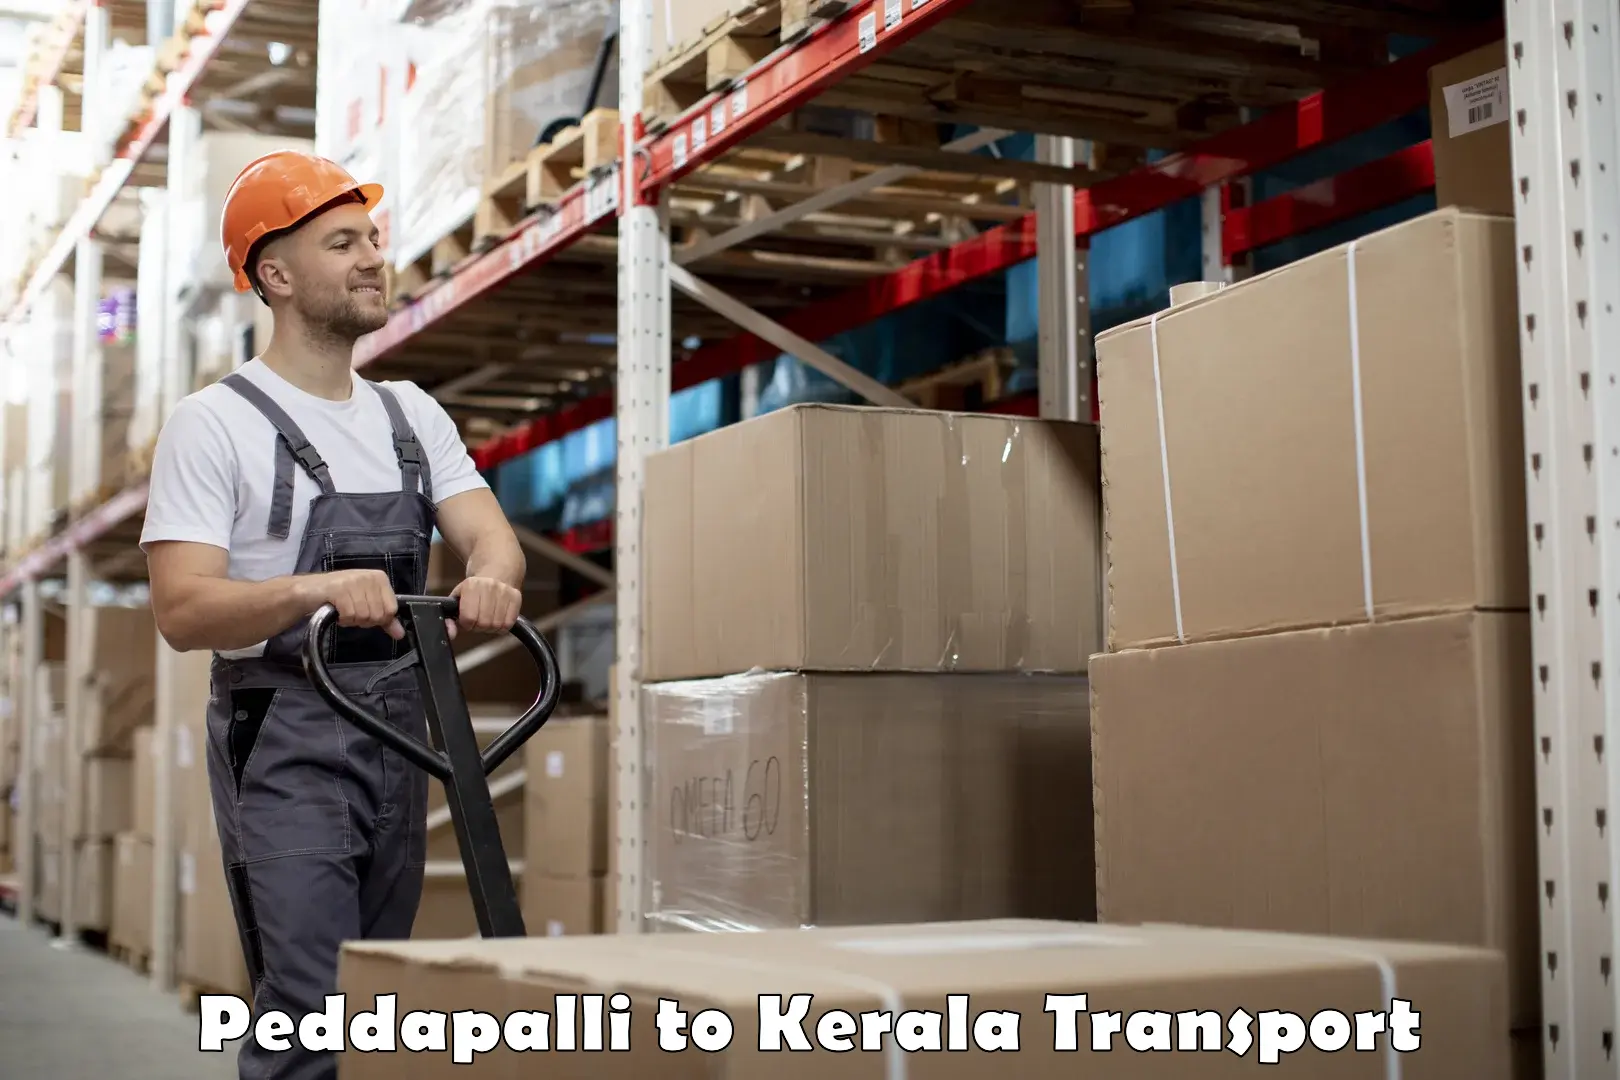 Nearby transport service Peddapalli to Thrissur